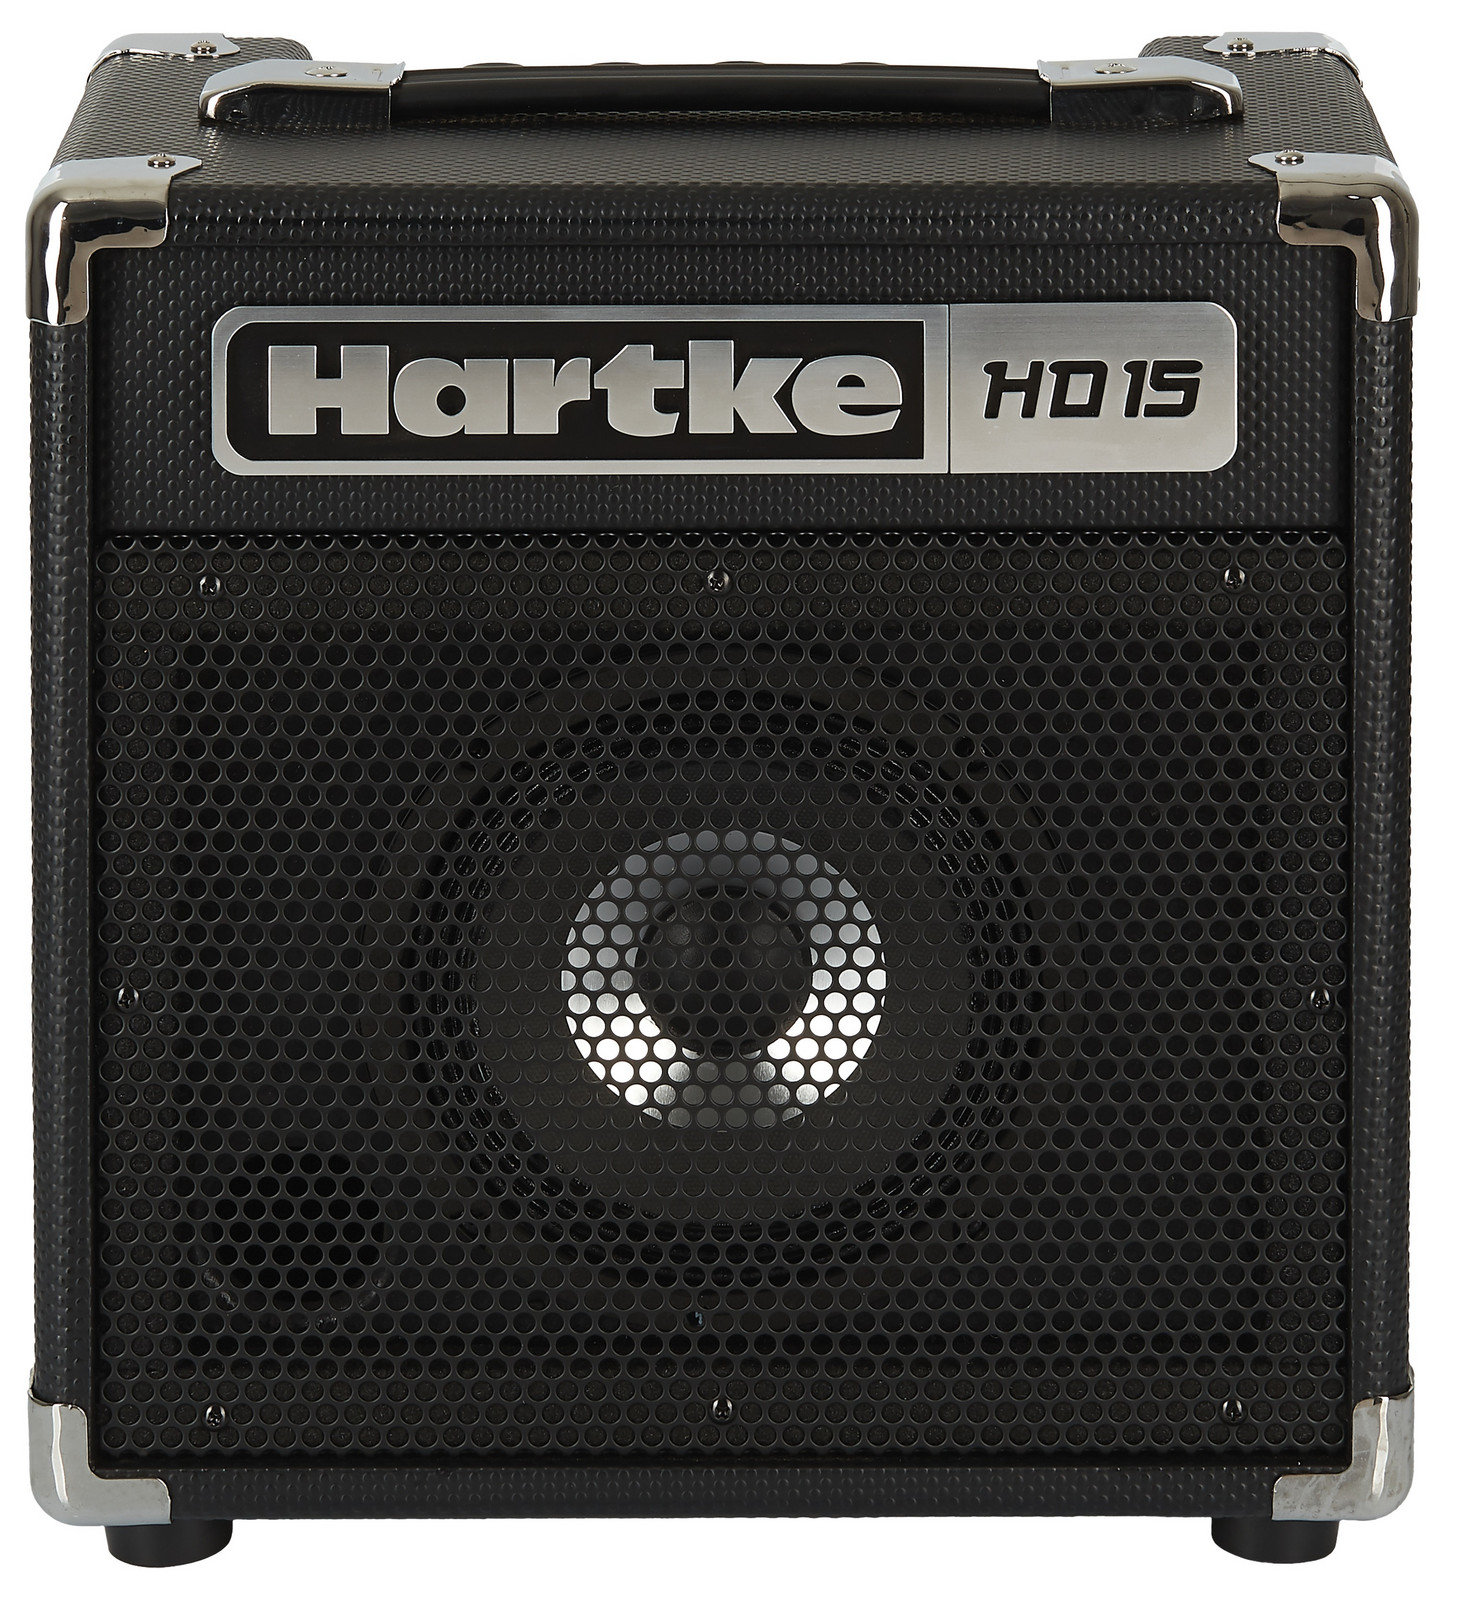 Hartke HD15 (rozbalené)